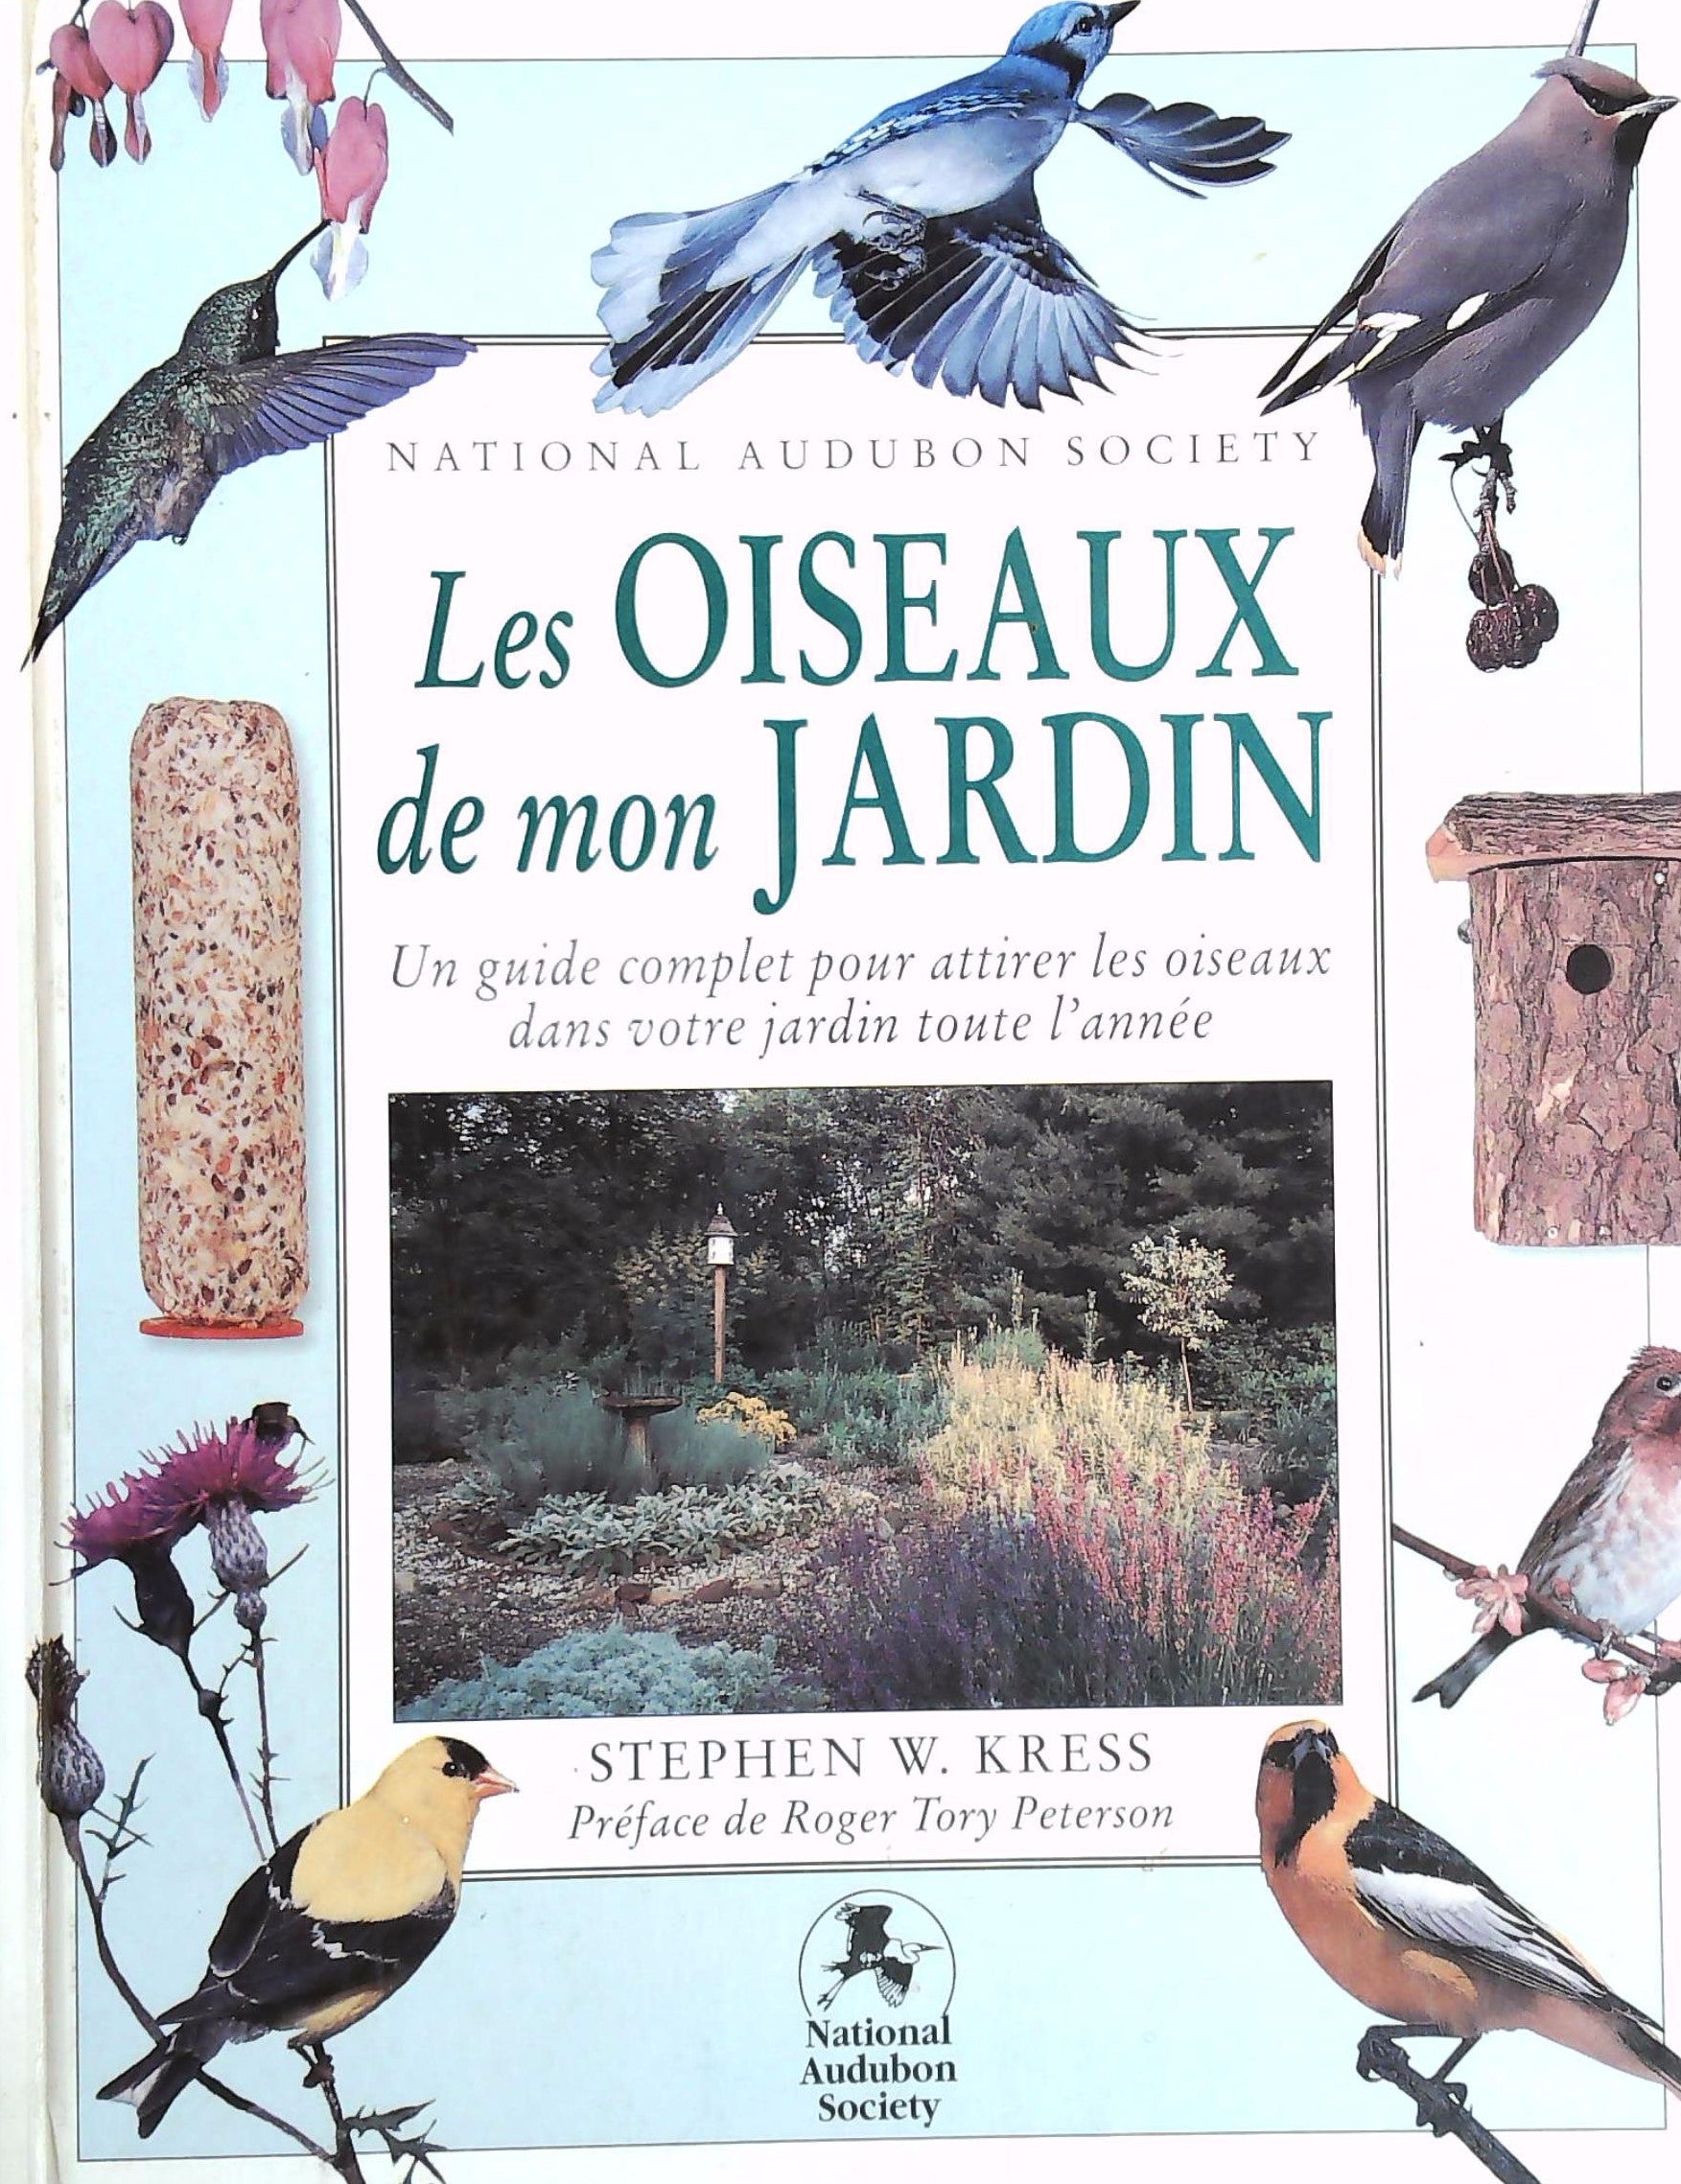 Livre ISBN 2892496128 Les oiseaux de mon jardins (Stephen W. Kress)